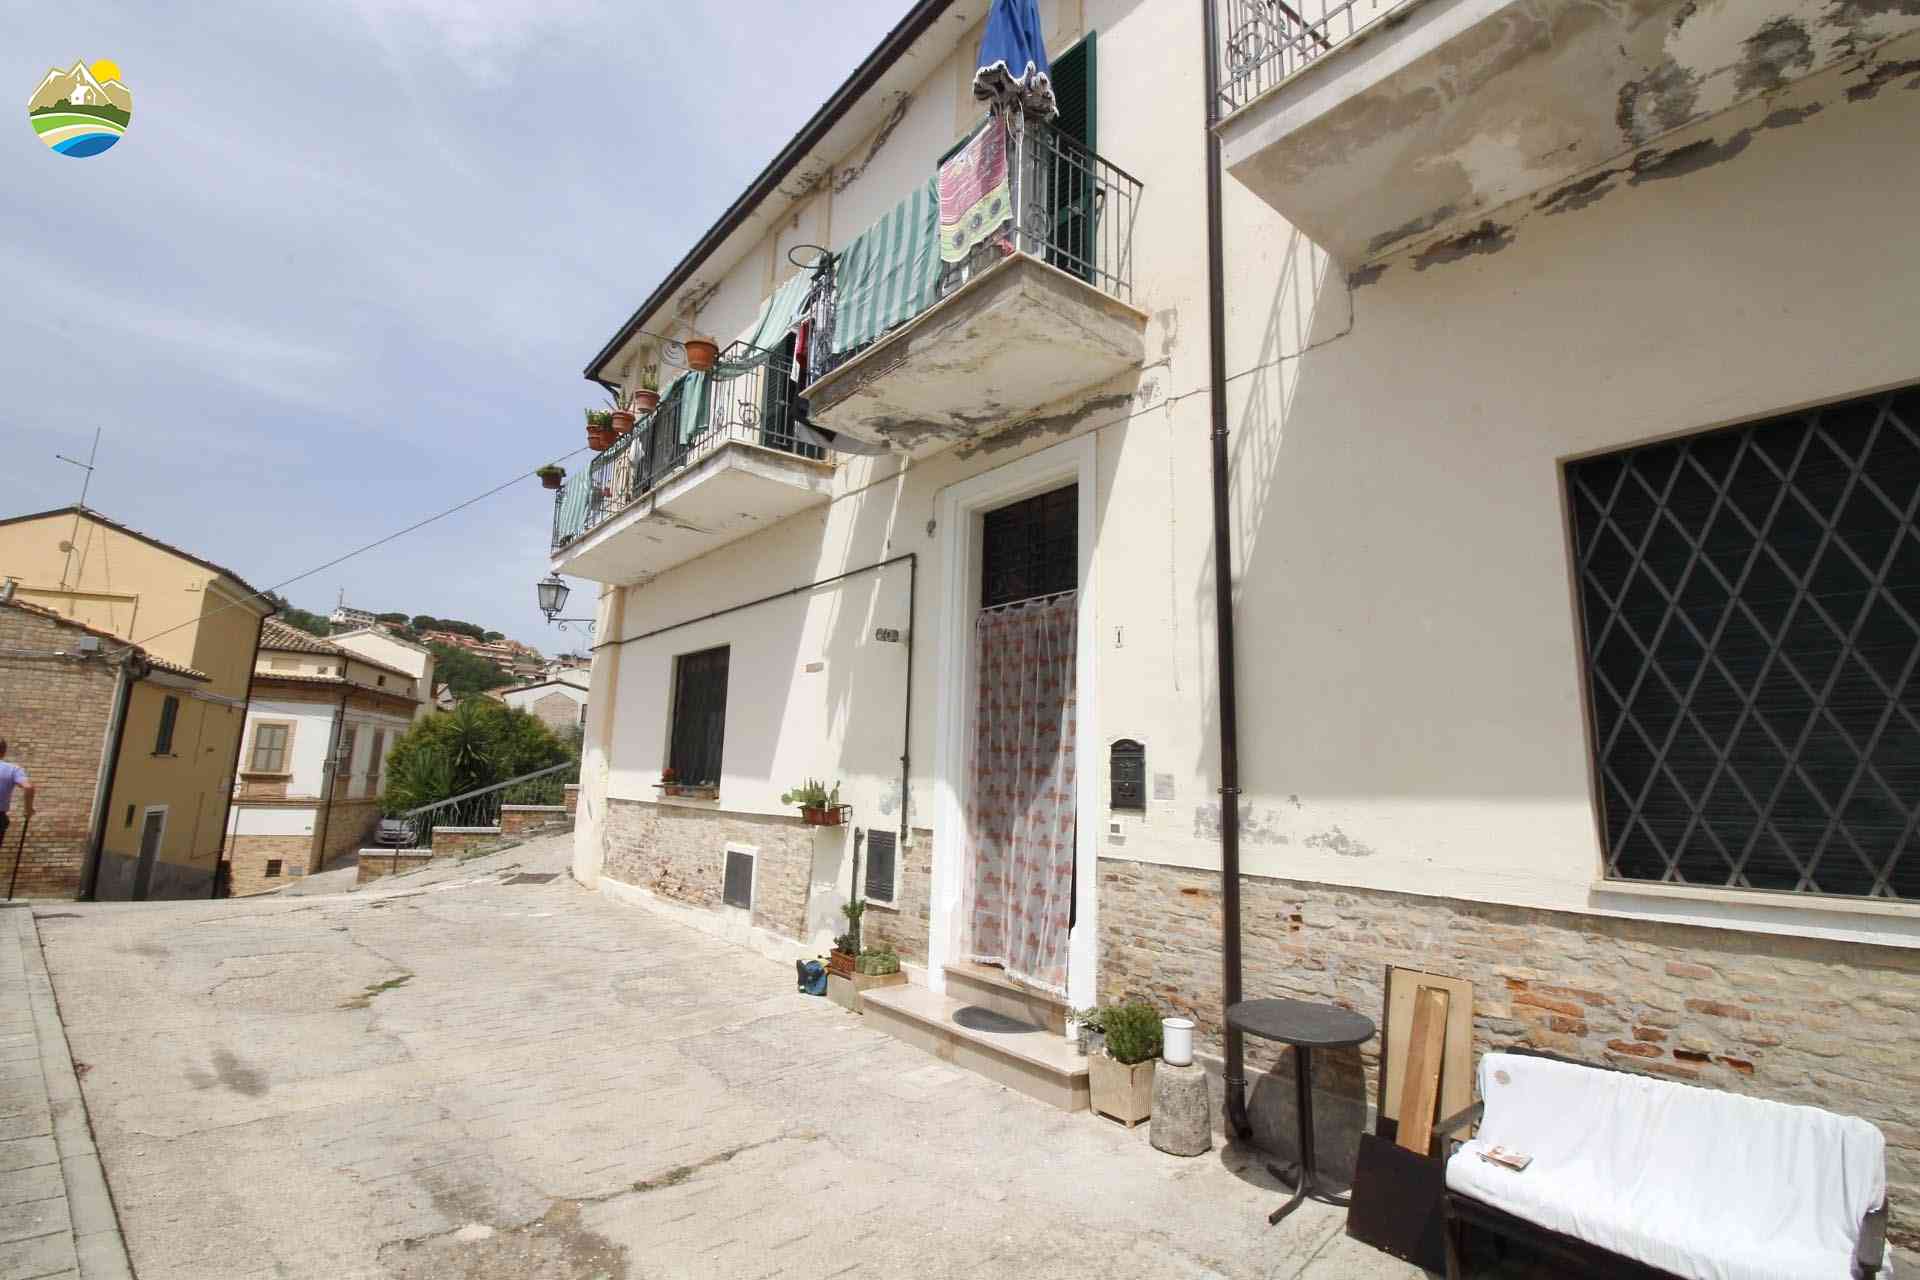 Townhouse Townhouse for sale Loreto Aprutino (PE), Casa del Maestro - Loreto Aprutino - EUR 166.238 780 small